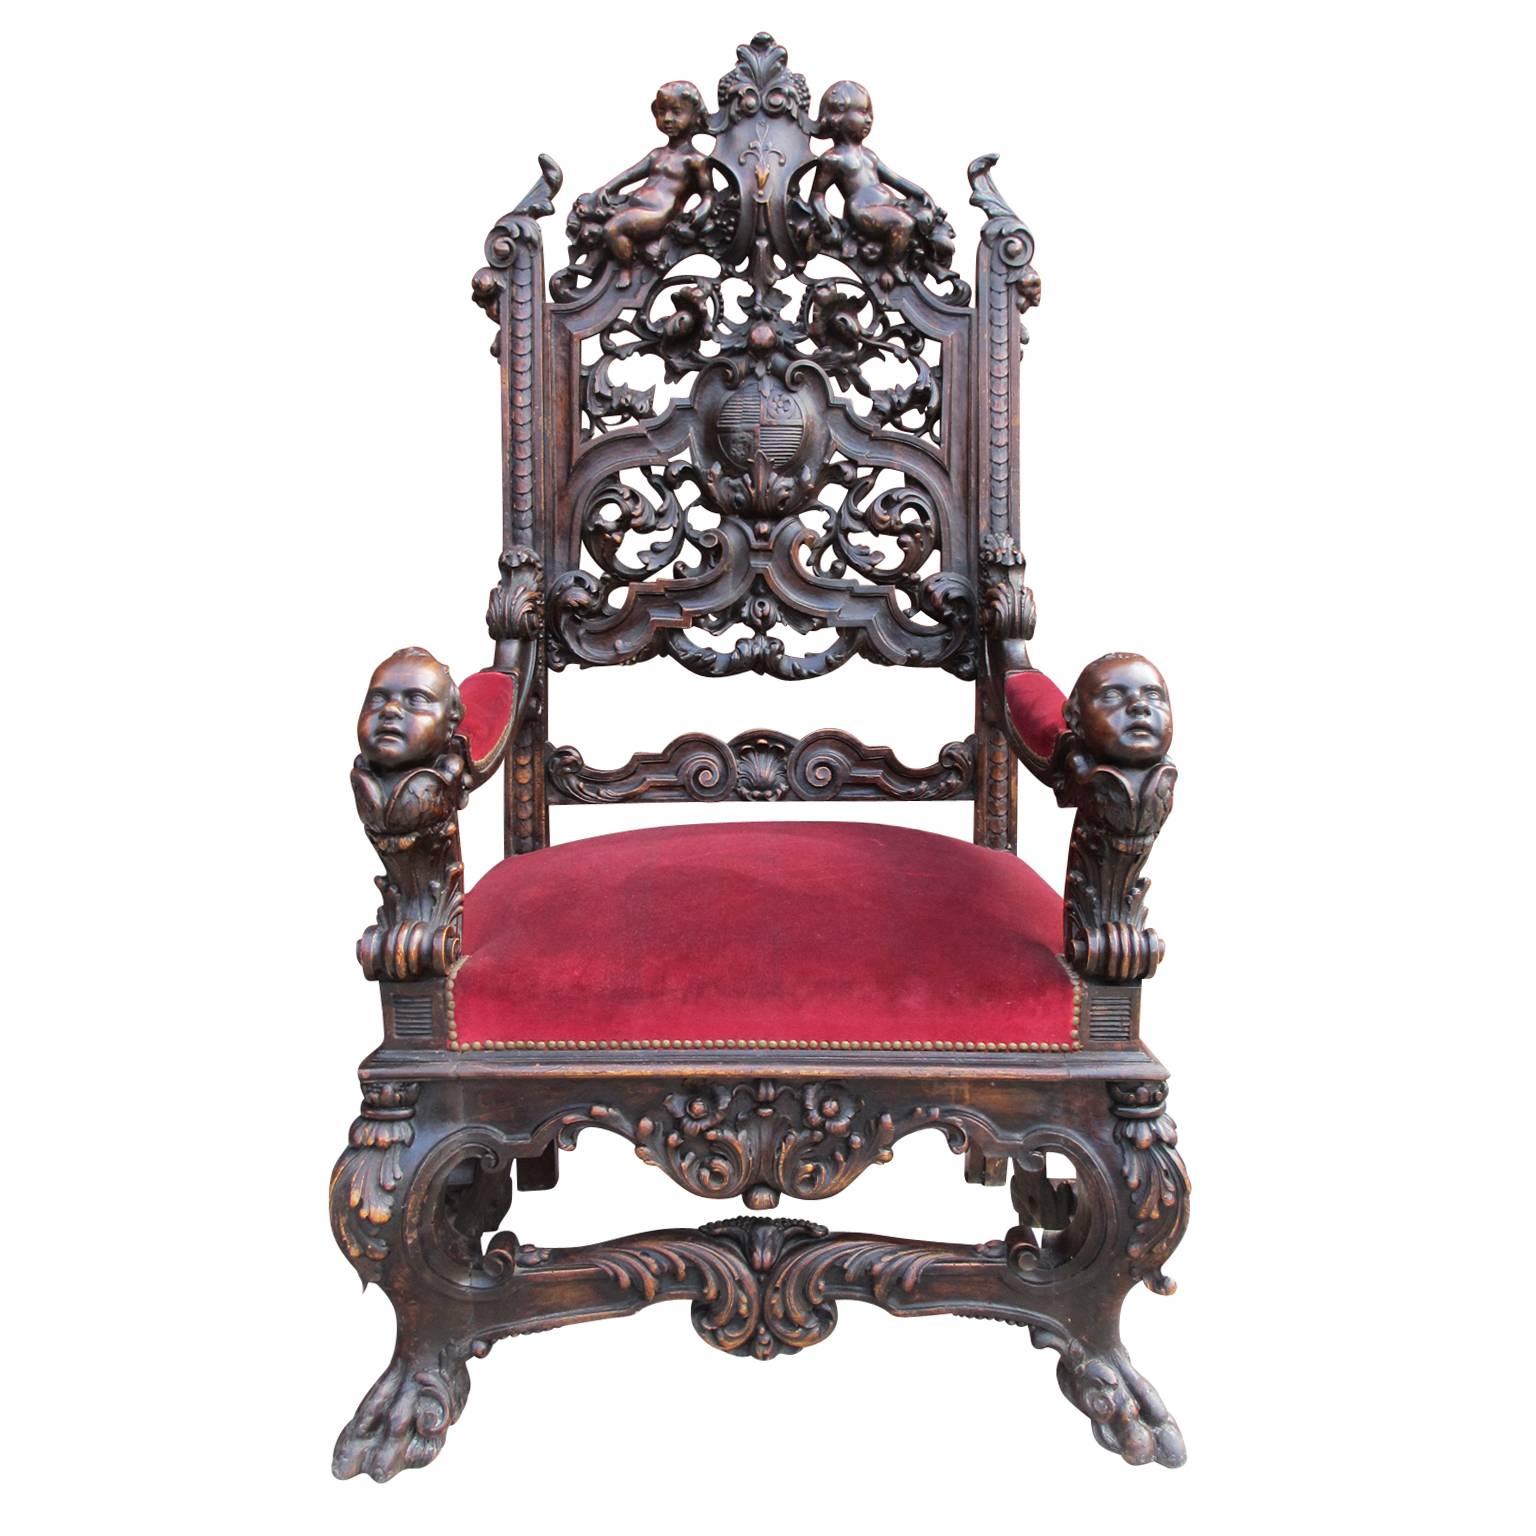 Paire de fauteuils trône en noyer sculpté de style Renaissance italienne du XIXe siècle. Les cadres baroques, sculptés de façon complexe, sont dotés de dossiers représentant une paire de Putti au repos au-dessus de feuillages, de rinceaux et